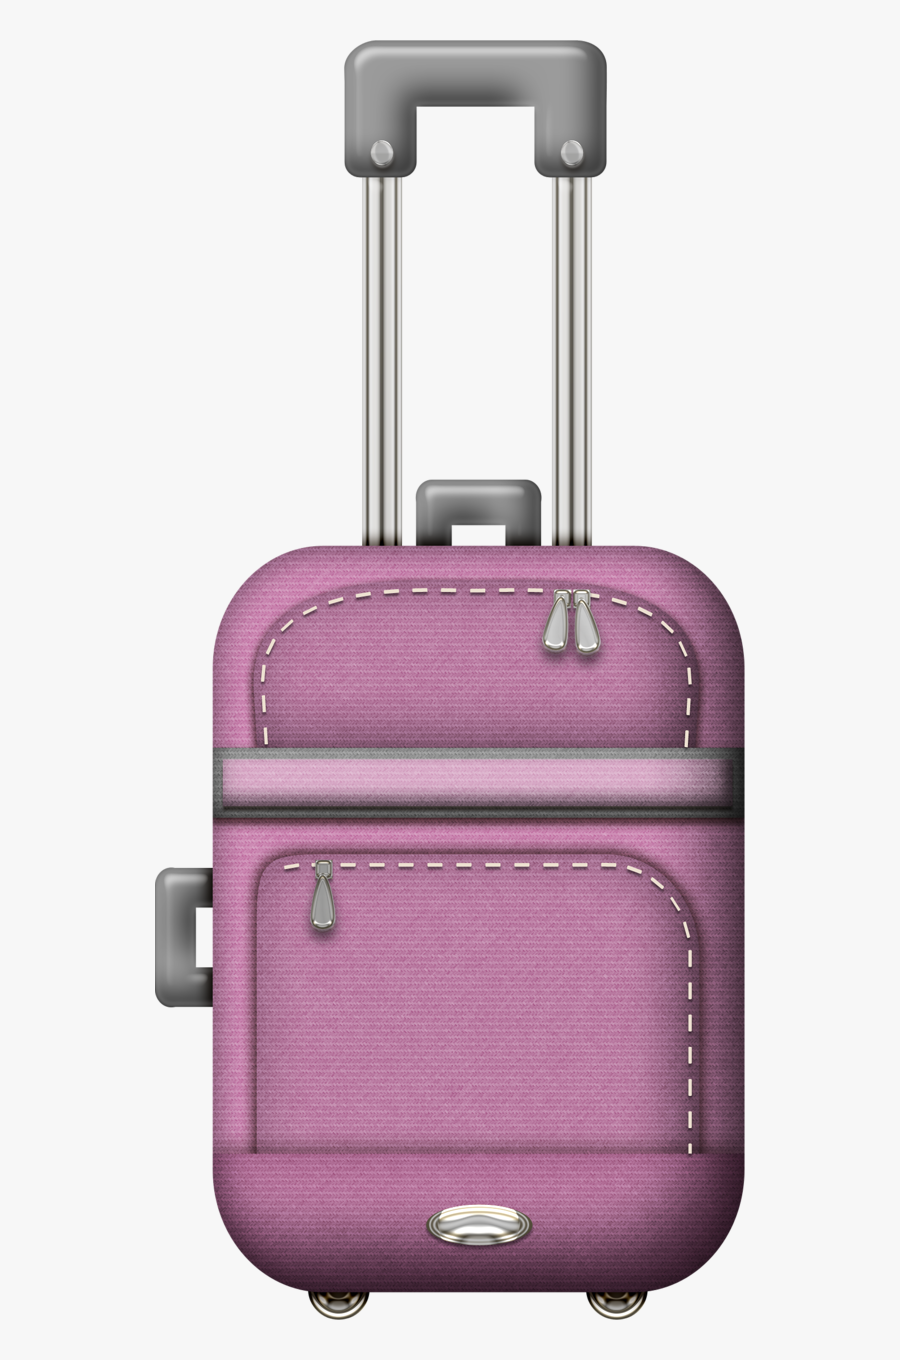 Luggage Clipart Purple - Trippingout Fotki Yandex Digi, Transparent Clipart